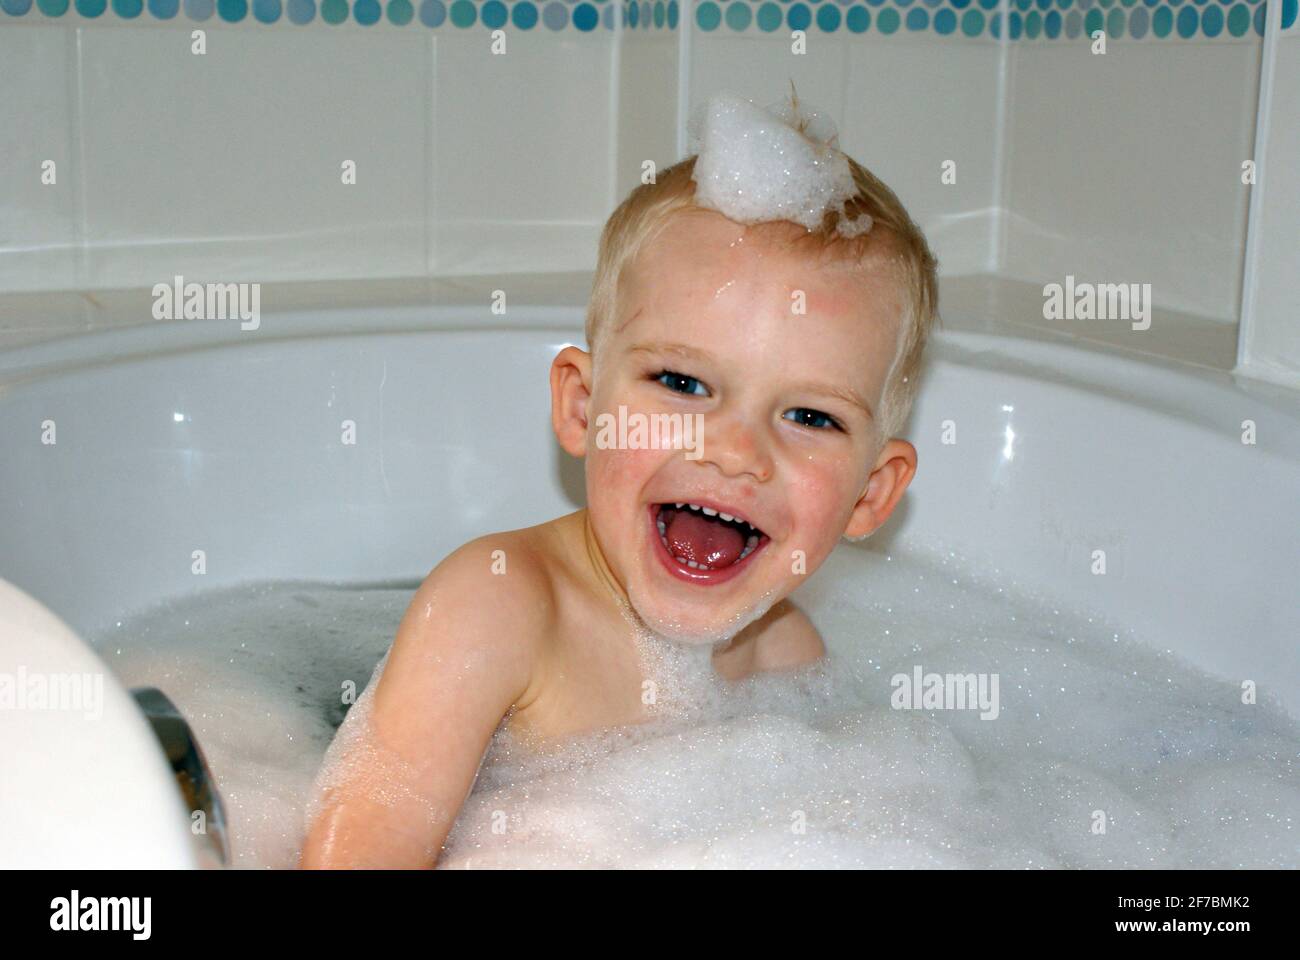 three years old boy sitting in a bathtub Stock Photo